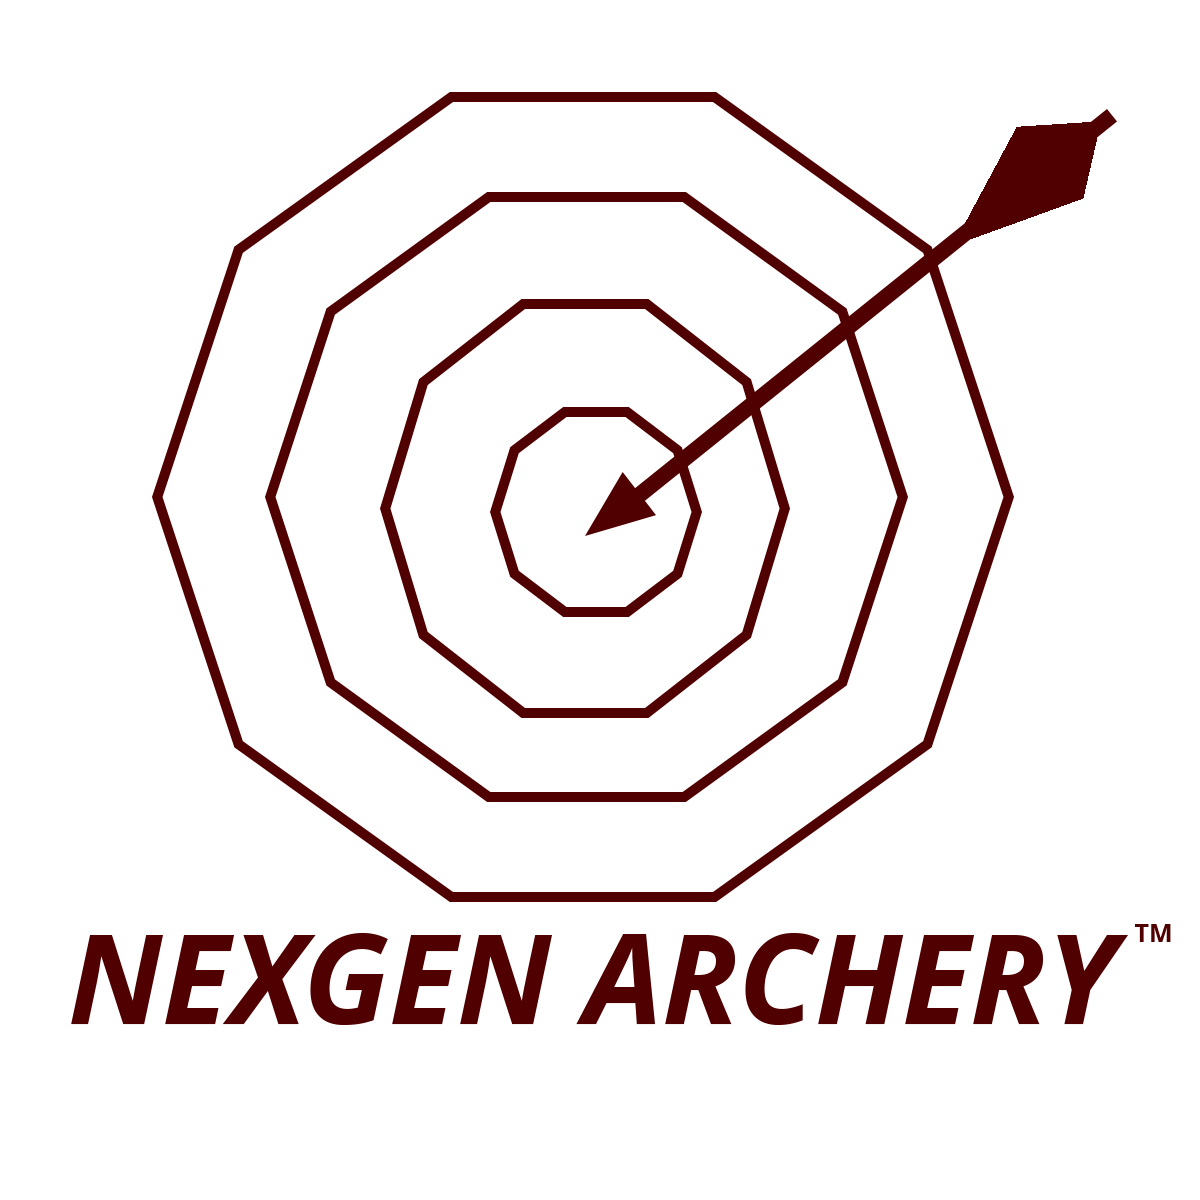 NexGen Archery